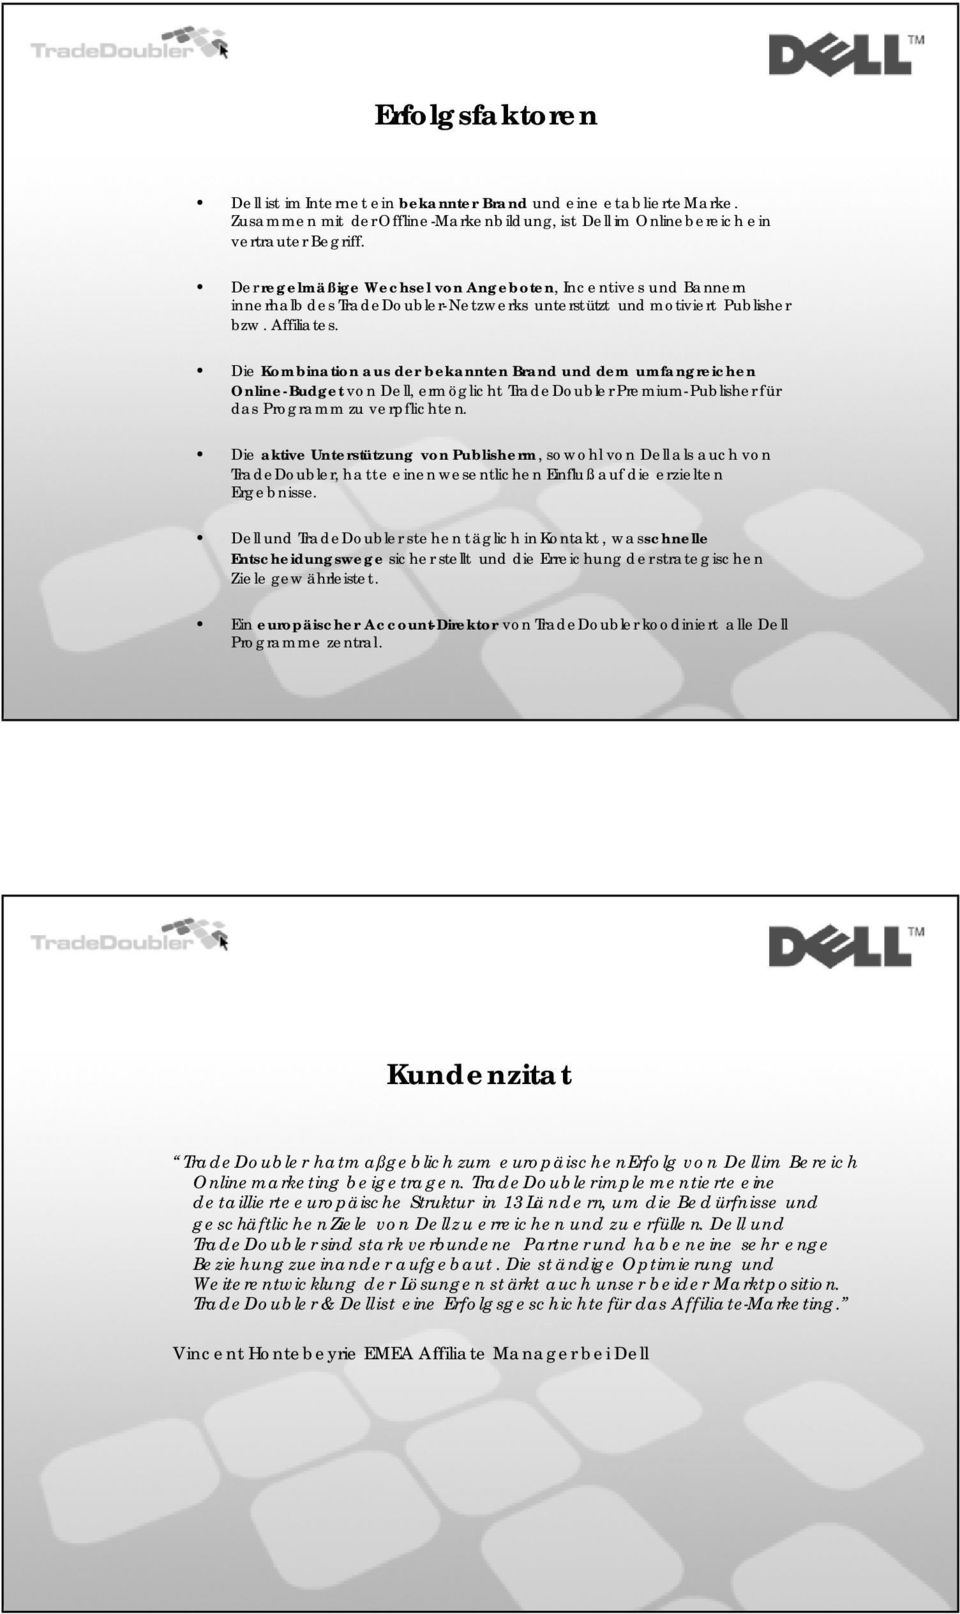 Die Kombination aus der bekannten Brand und dem umfangreichen Online-Budget von Dell, ermöglicht TradeDoubler Premium-Publisher für das Programm zu verpflichten.